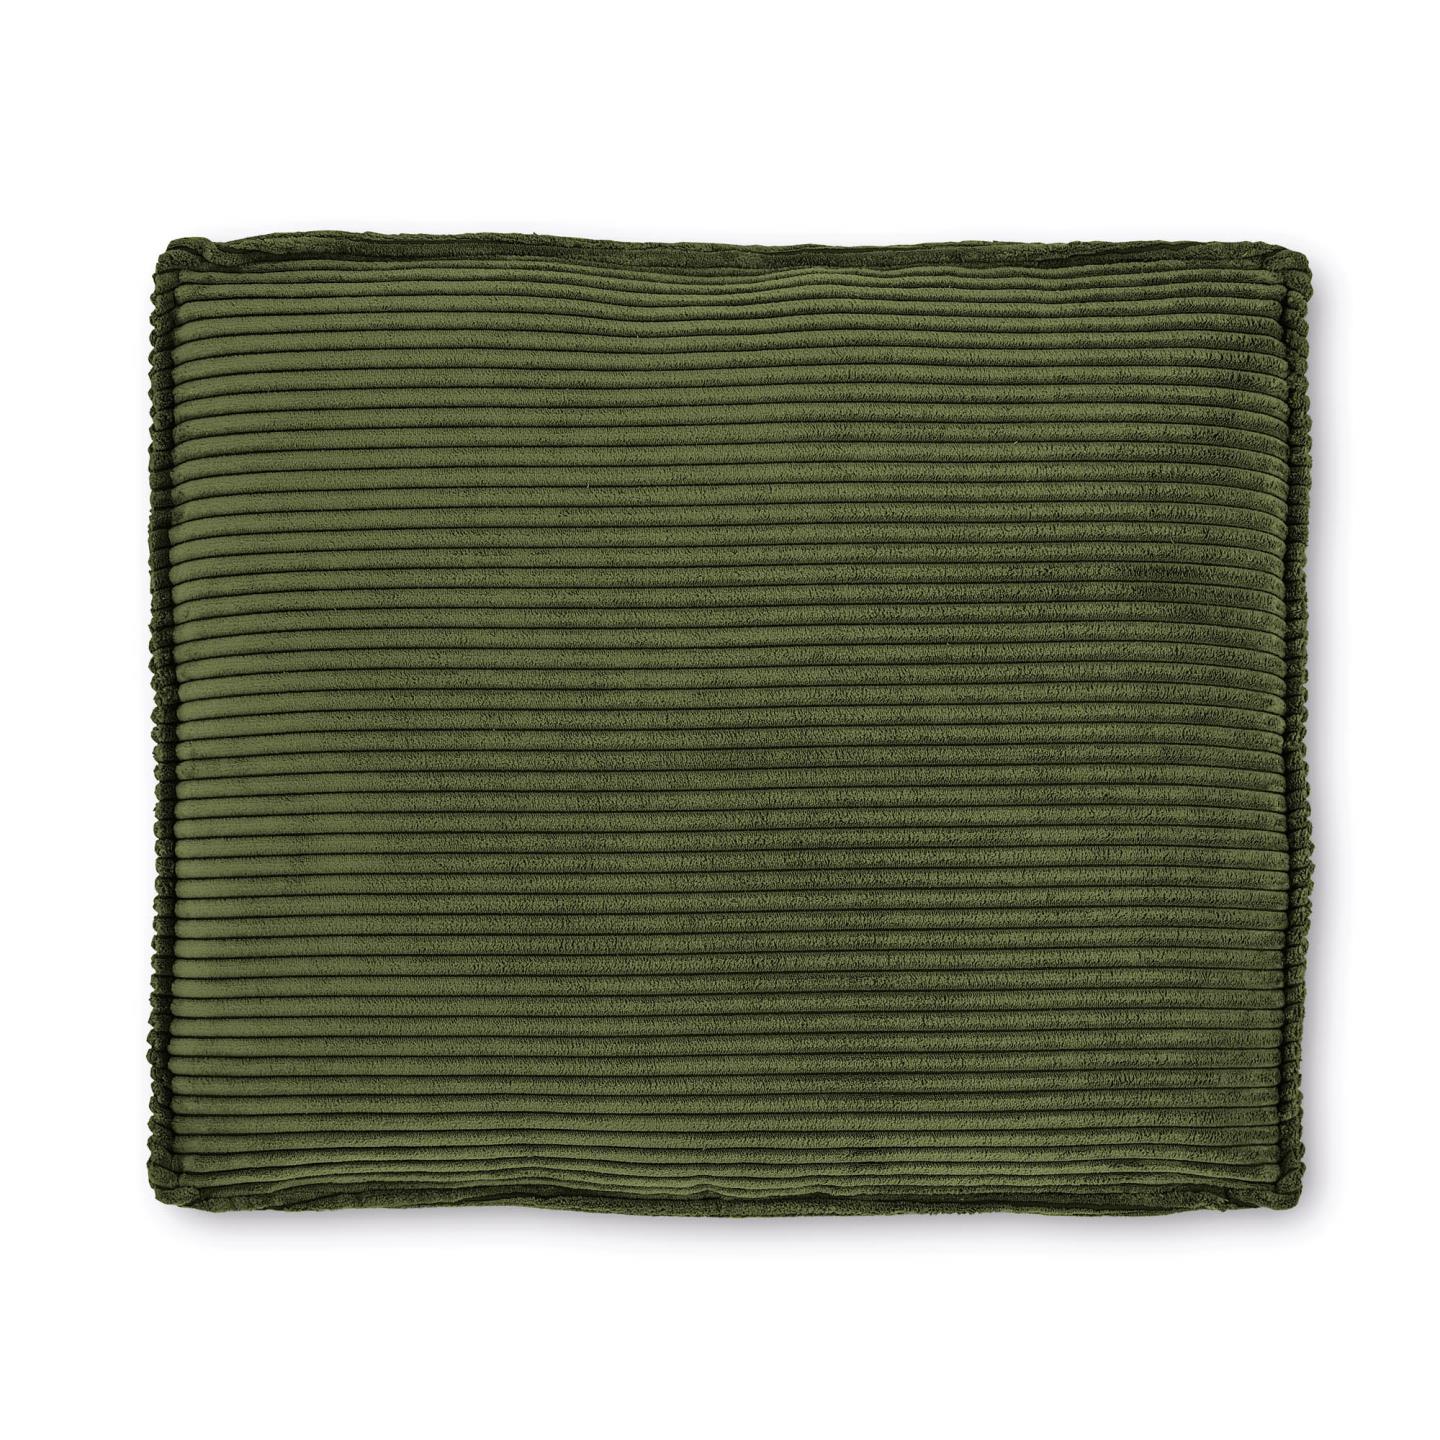 Blok párna, zöld, széles varrású kordbársony, 50 x 60 cm